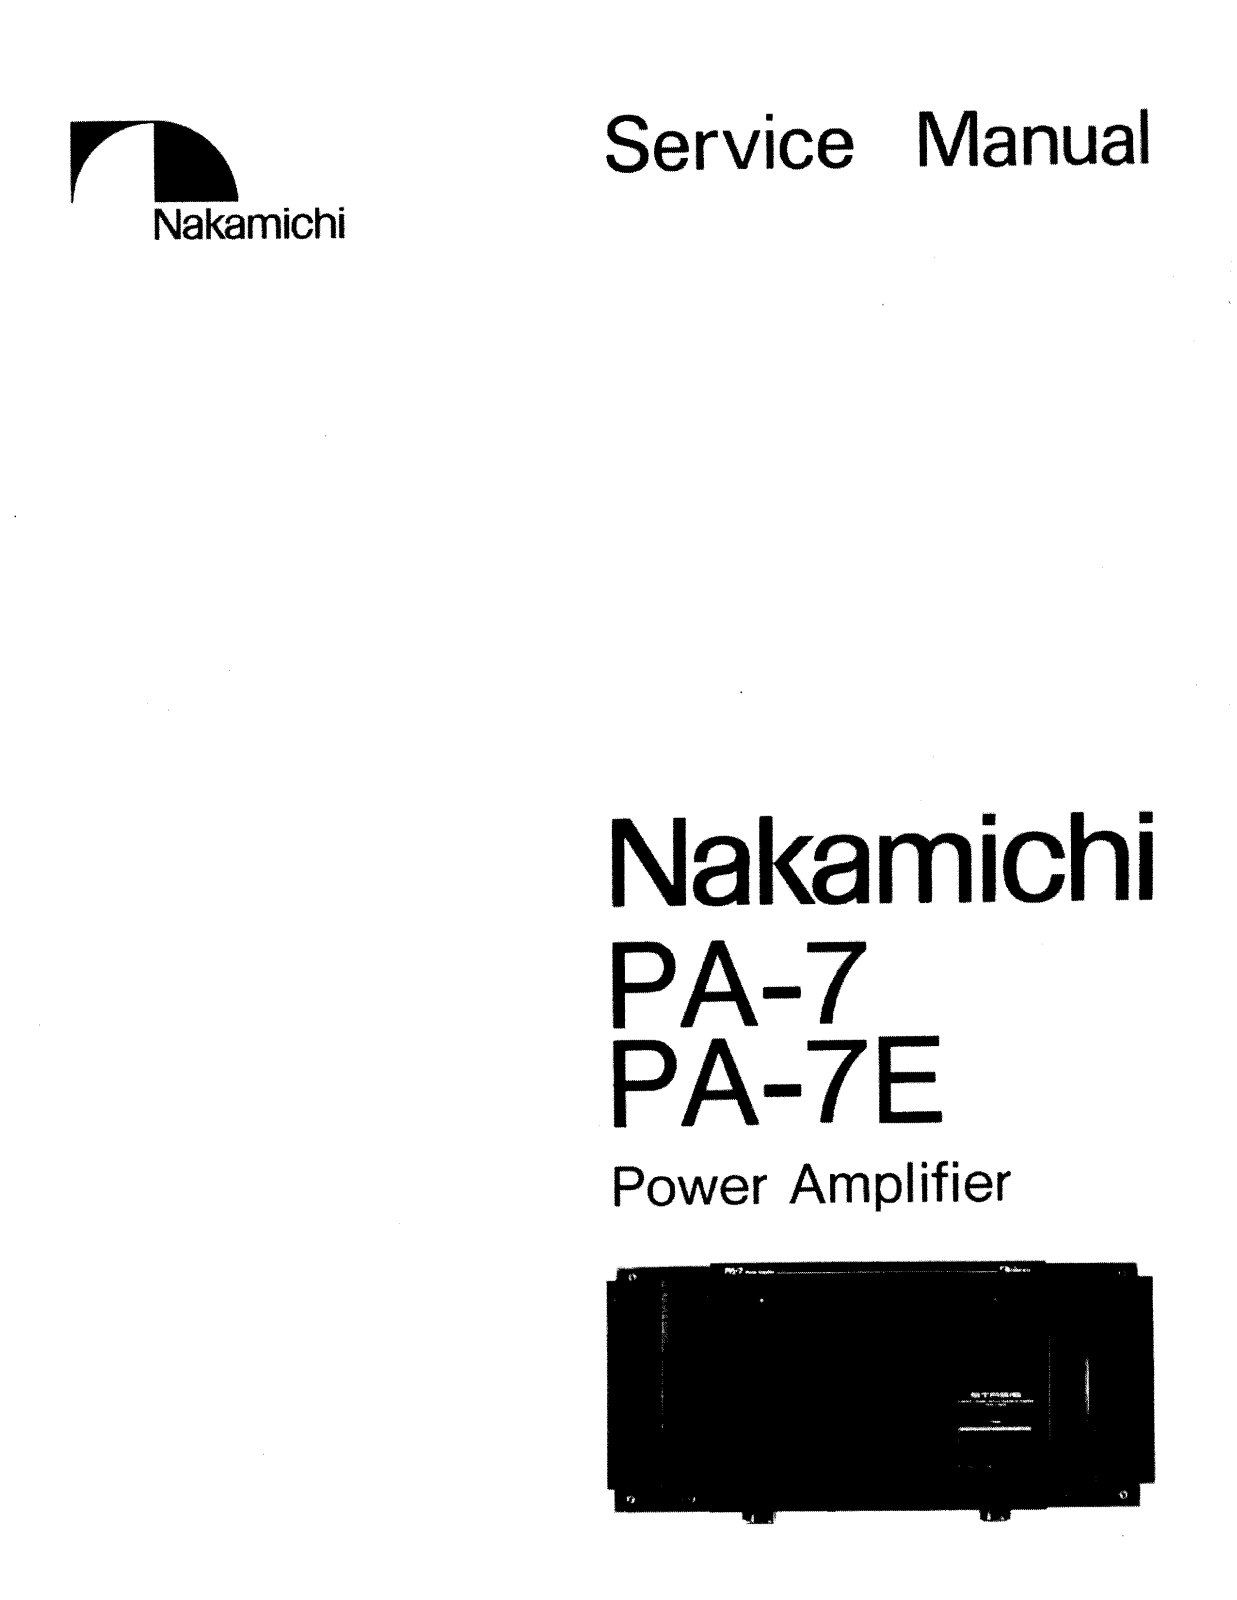 Nakamichi PA-7 Service manual